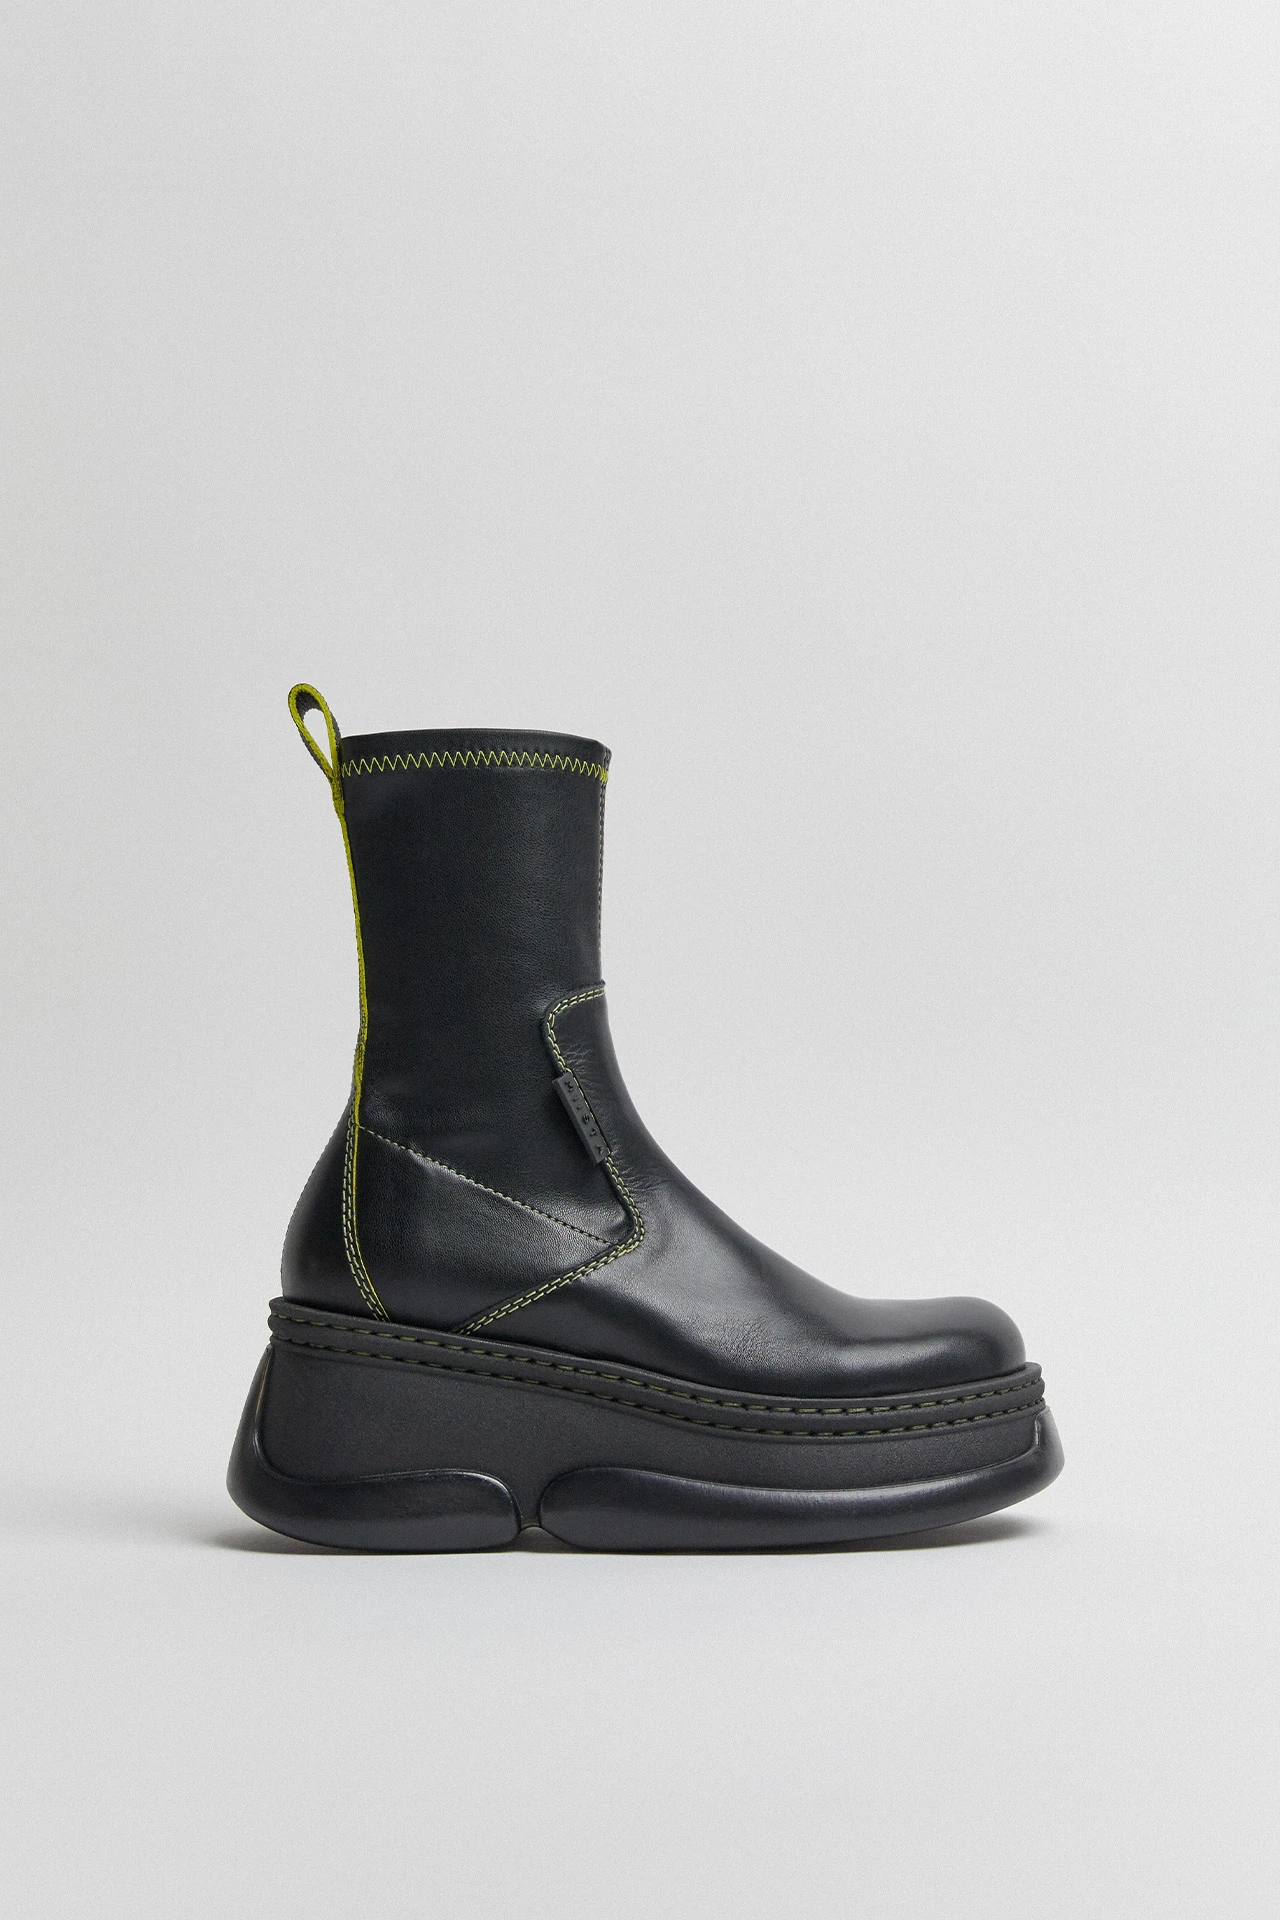 E8-kattrin-black-boots-01